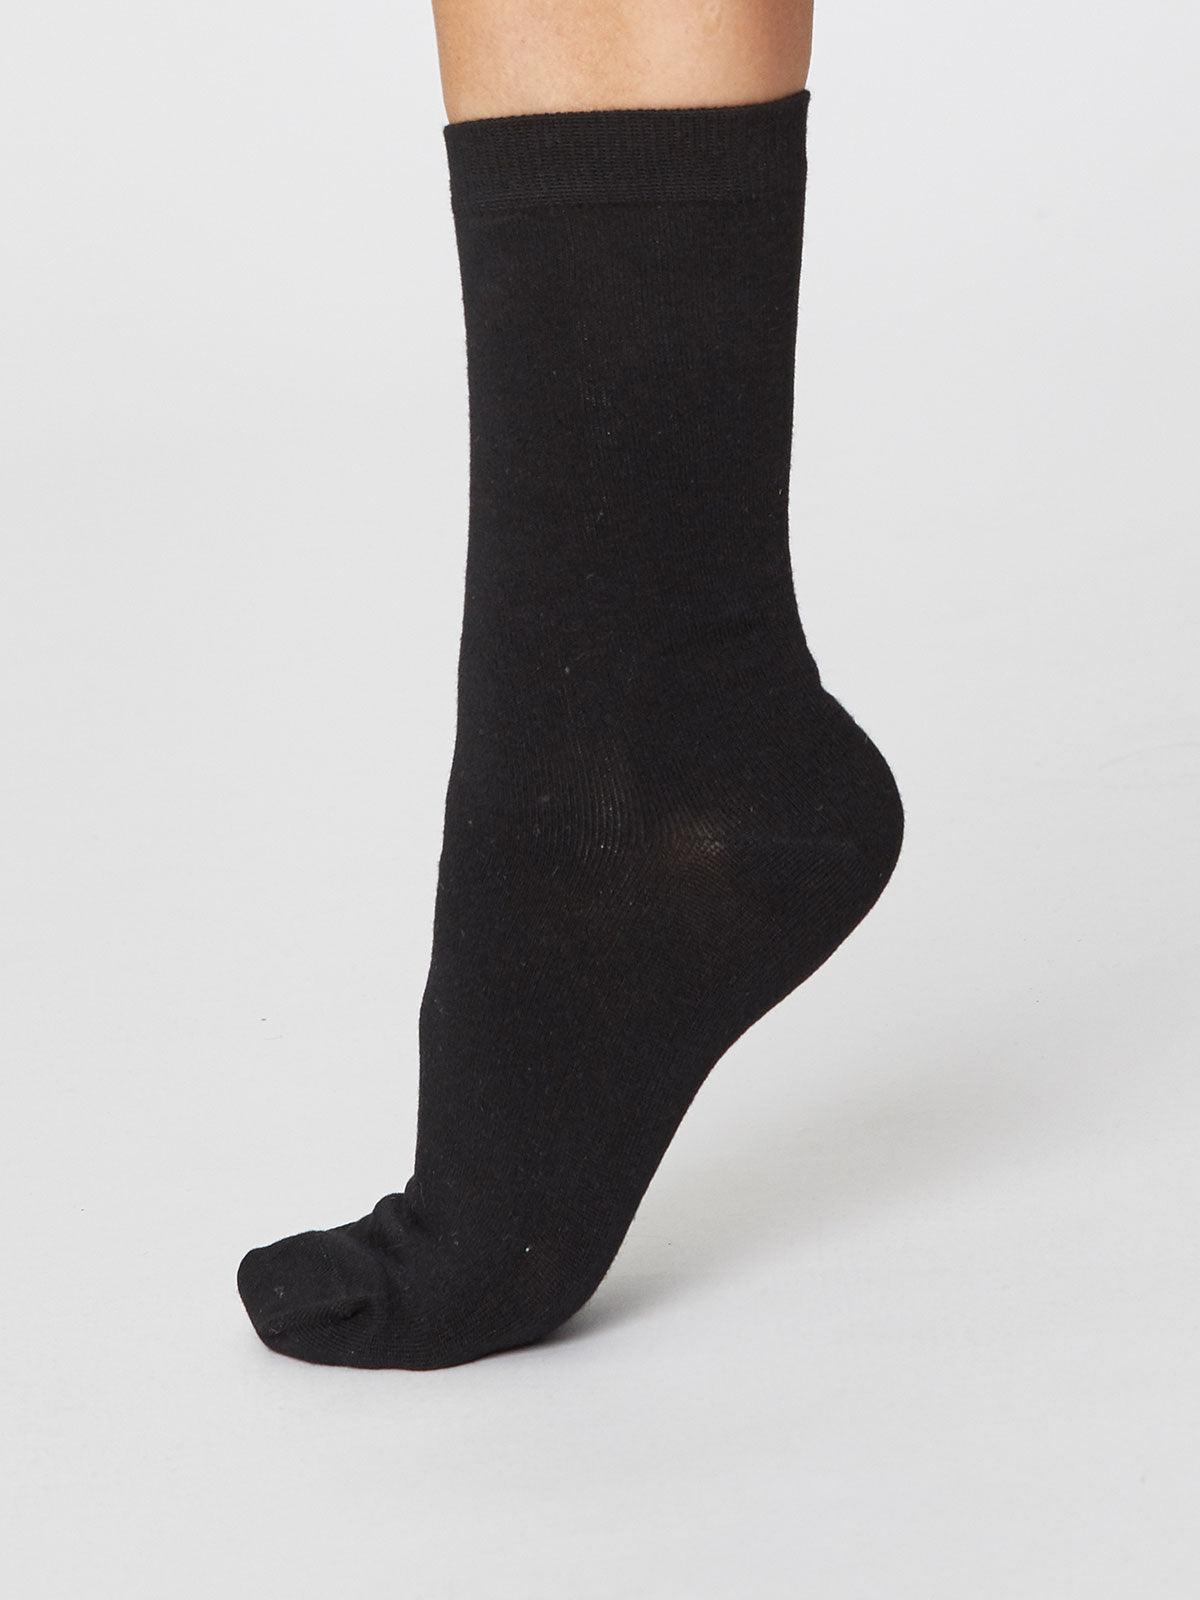 Solid Jackie Socks - Black - Thought Clothing UK